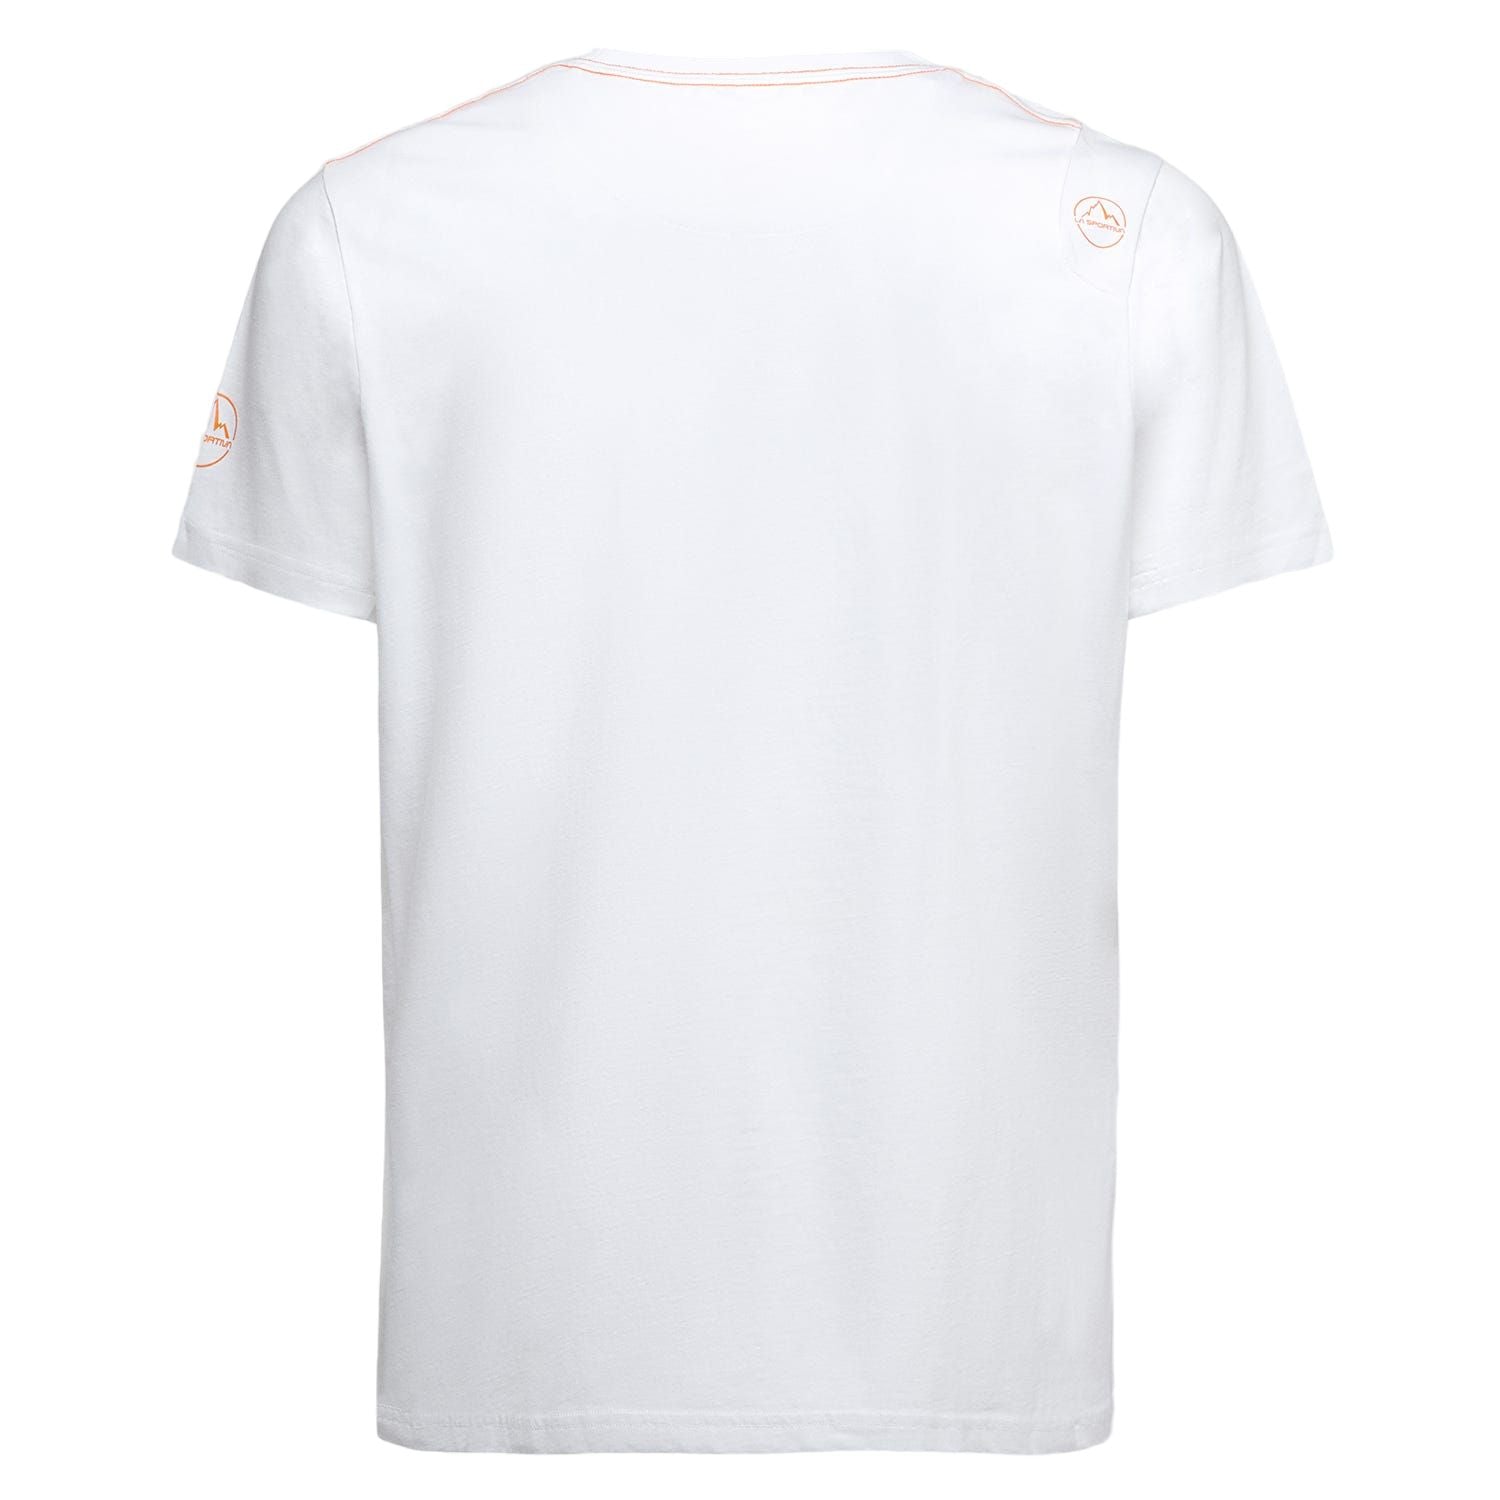 T-shirt Cinquecento Uomo White/Sangria